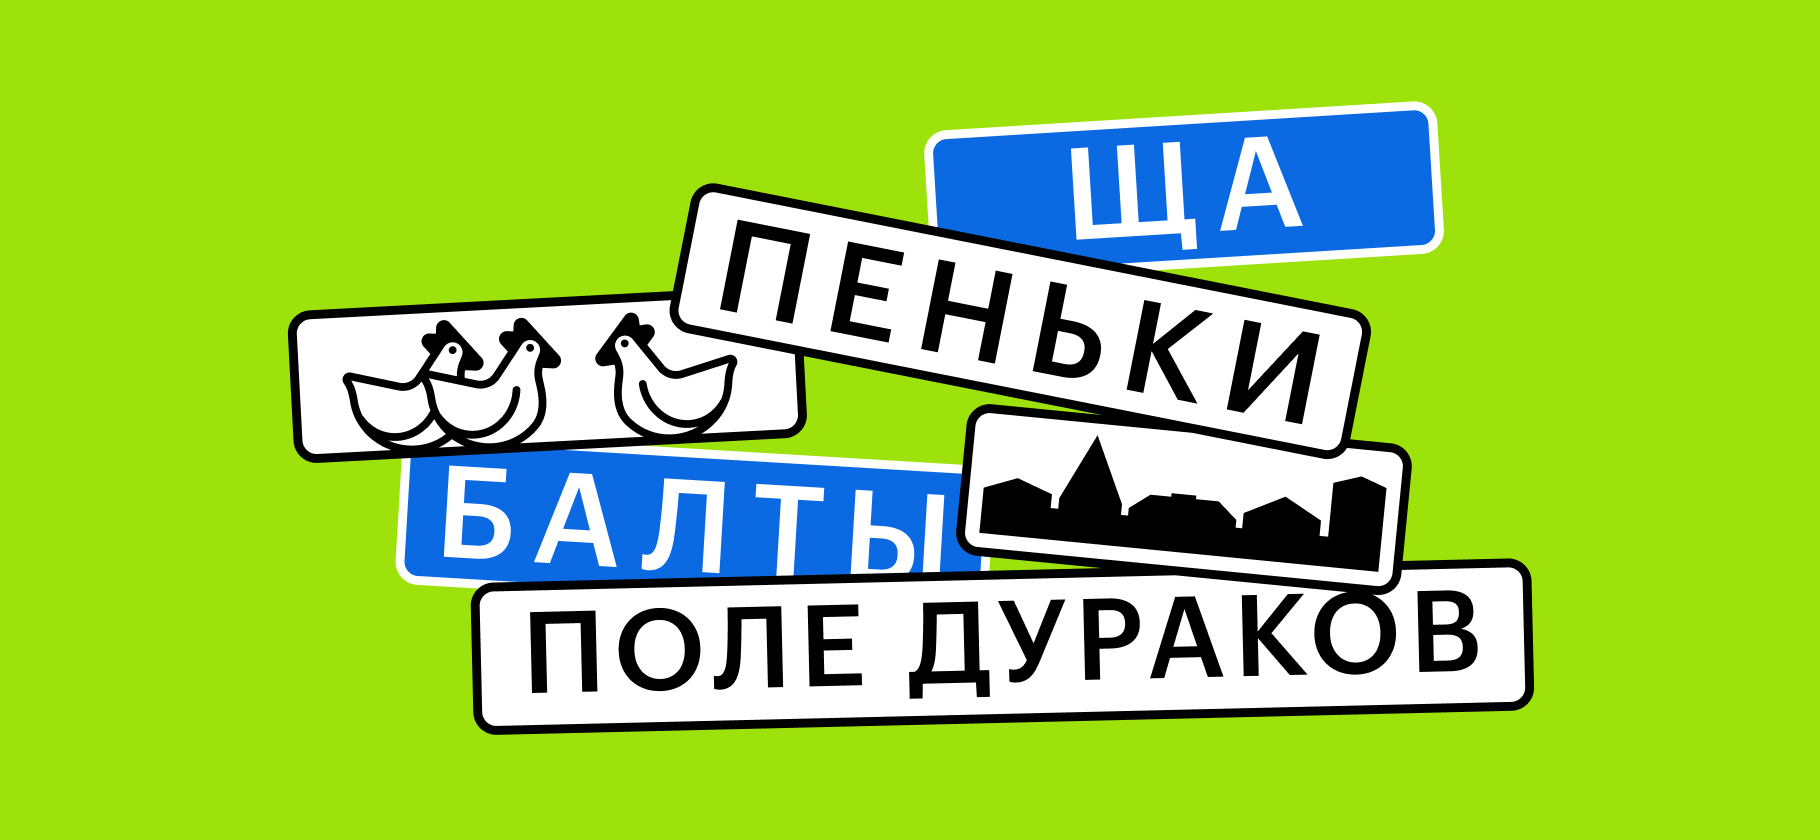 «Пока это просто Поле Дураков»: 8 необычных названий мест в городах России